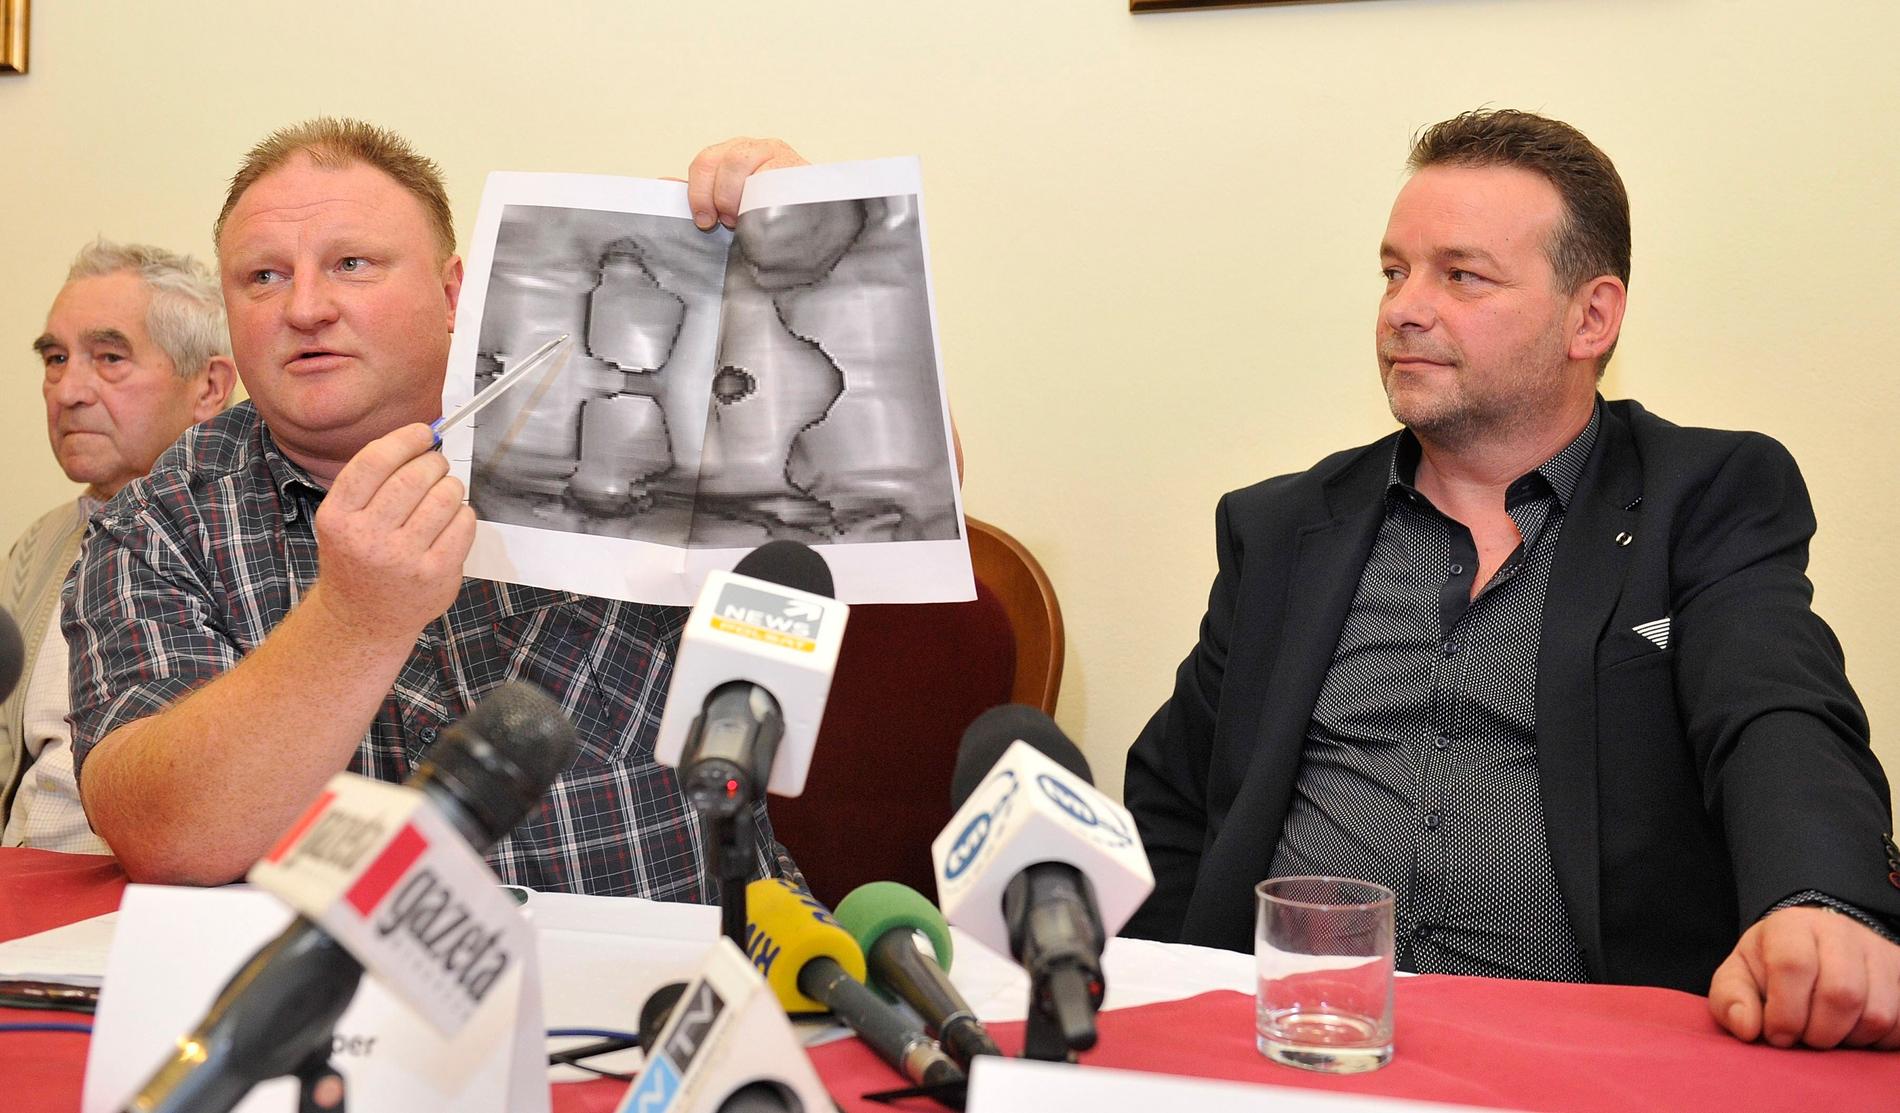 Andreas Richter och Piotr Koper visar en radarbild som enligt dem föreställer det försvunna guldtåget, på en presskonferens den 18 september 2015.